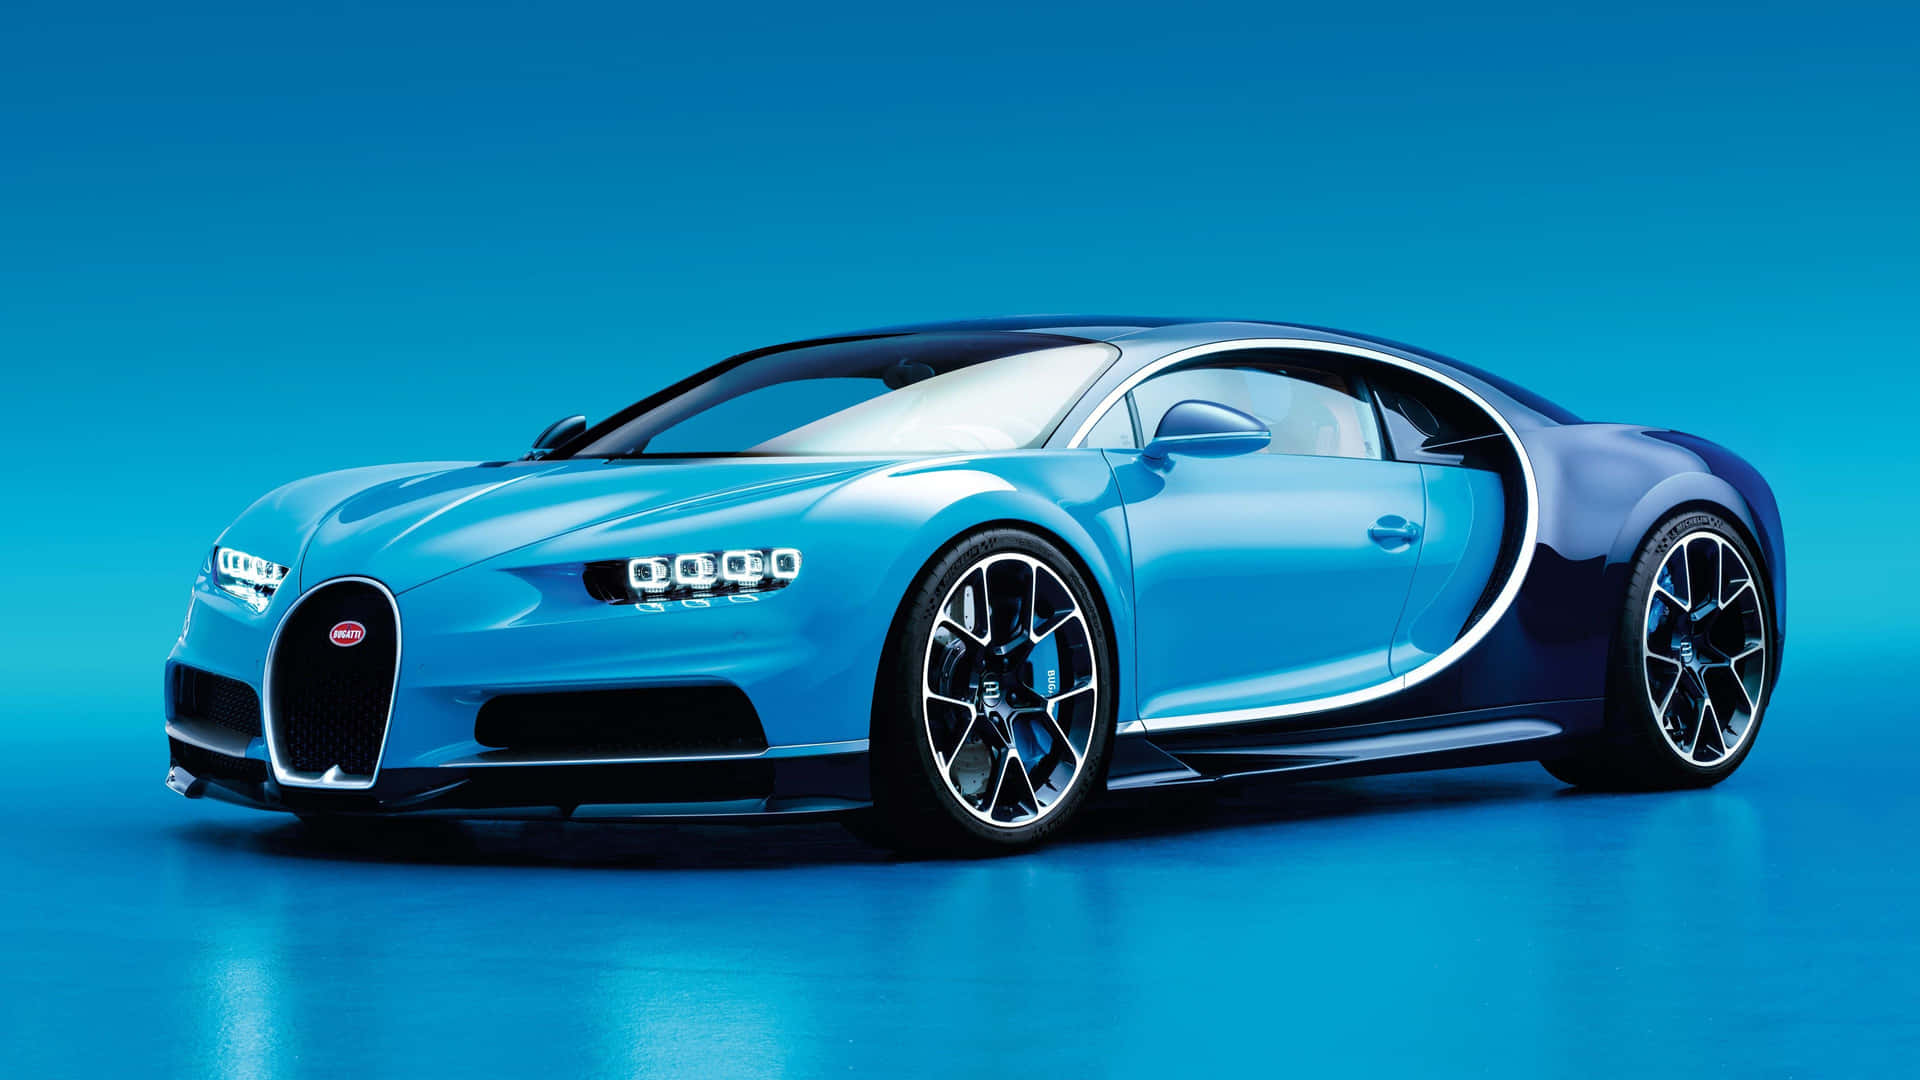 Superail Limite - Ammira L'imponente Bugatti In 4k Sfondo